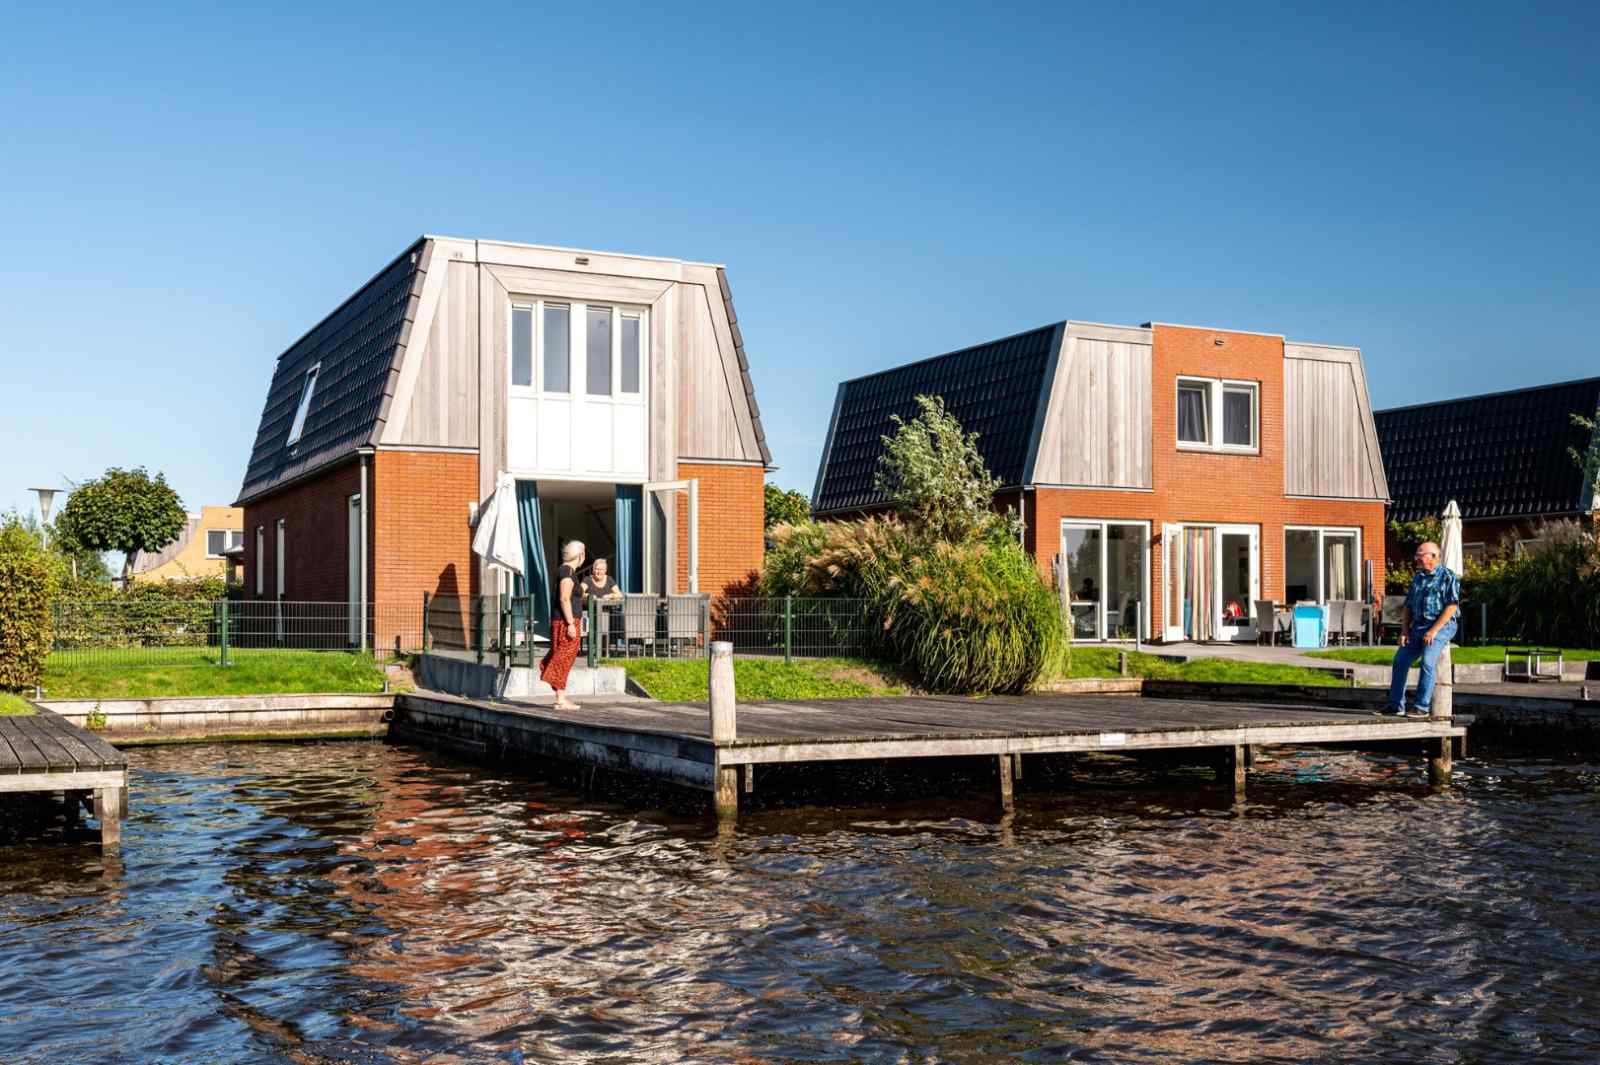 Luxe 6 persoons vakantiehuis aan het water met drie sla